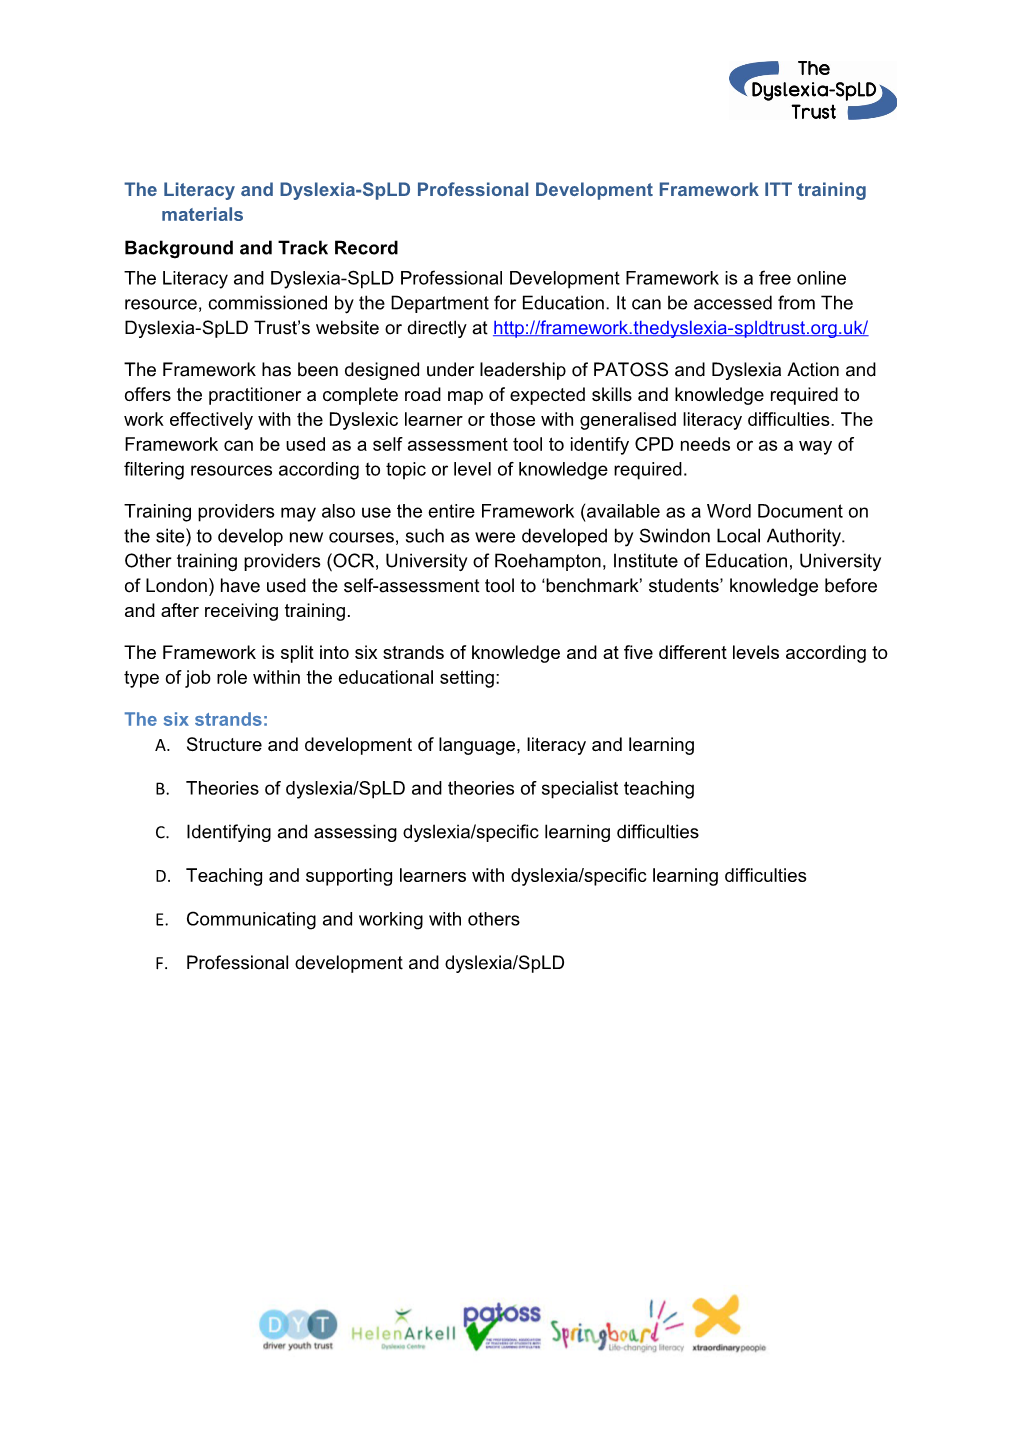 The Literacy and Dyslexia-Spld Professional Development Framework ITT Training Materials